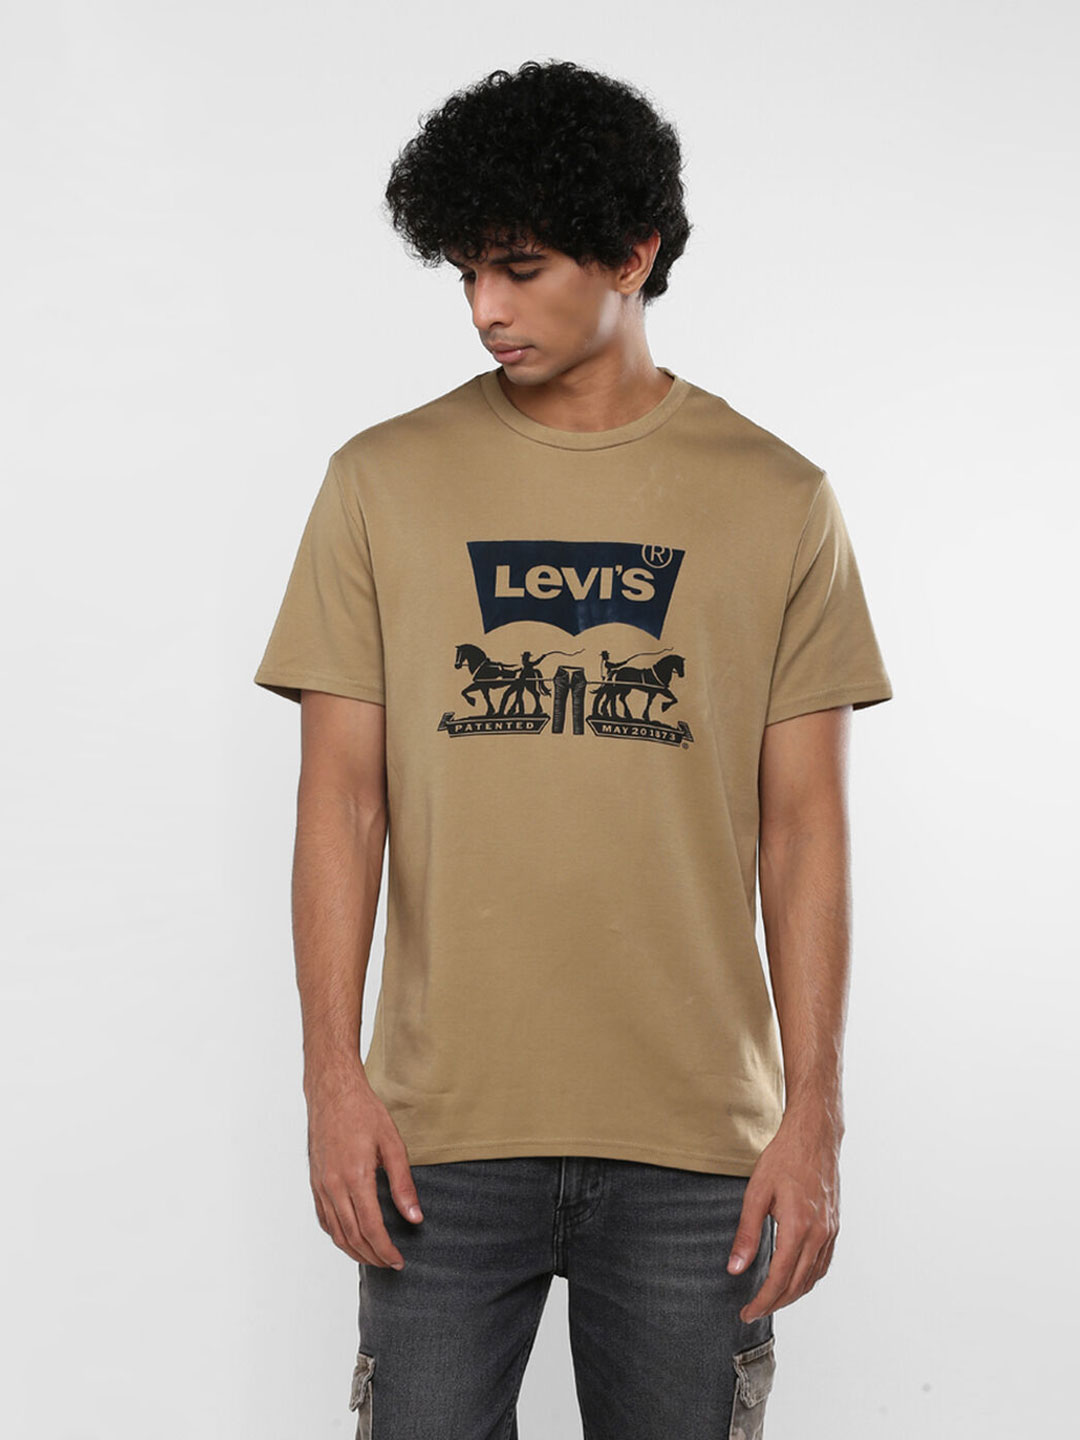 levi's khaki t shirt